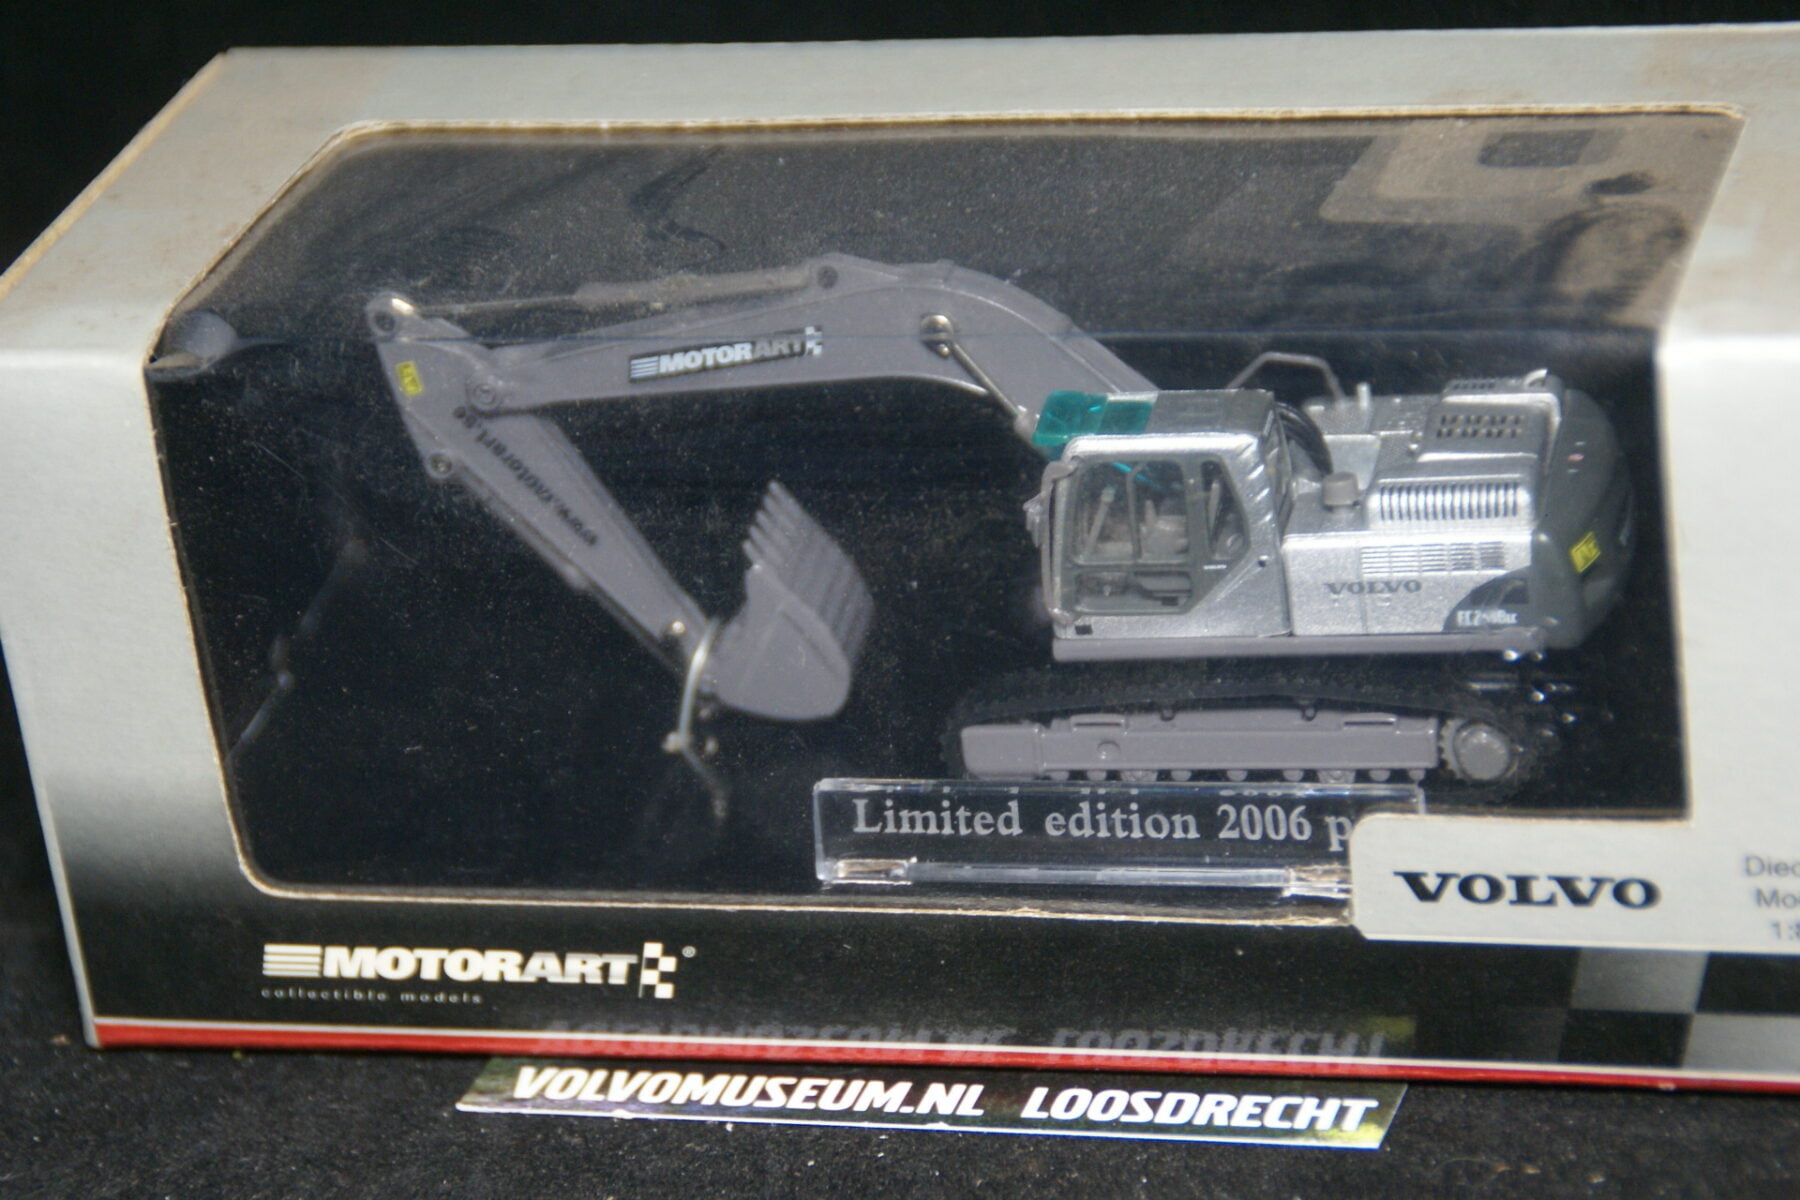 DSC02961 miniatuur Volvo graafmachine zilvermet ca 1op70 Motorart 133403 1 van 2006 MB